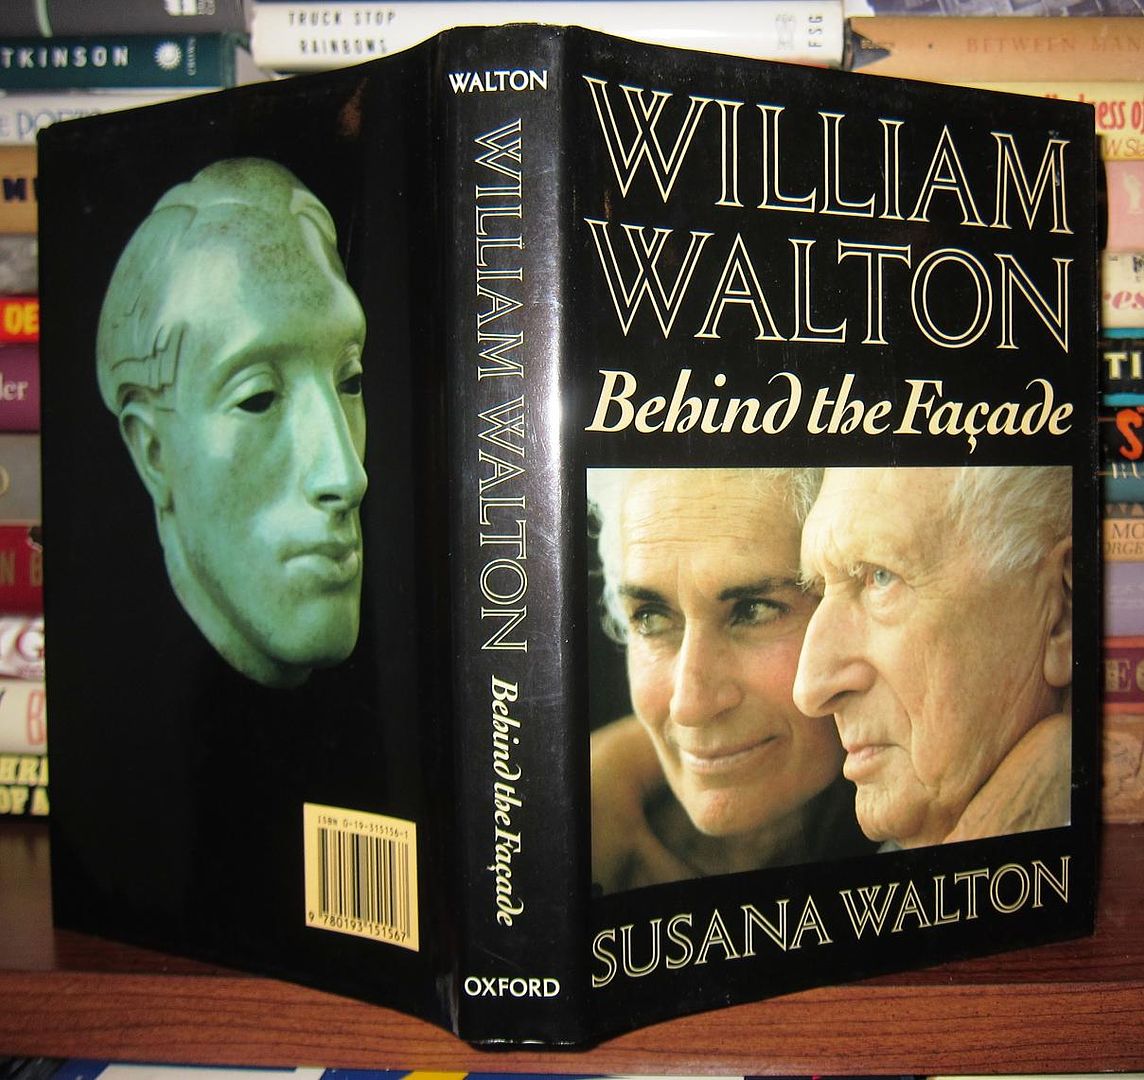 WALTON, SUSANA - William Walton Behind the Facade